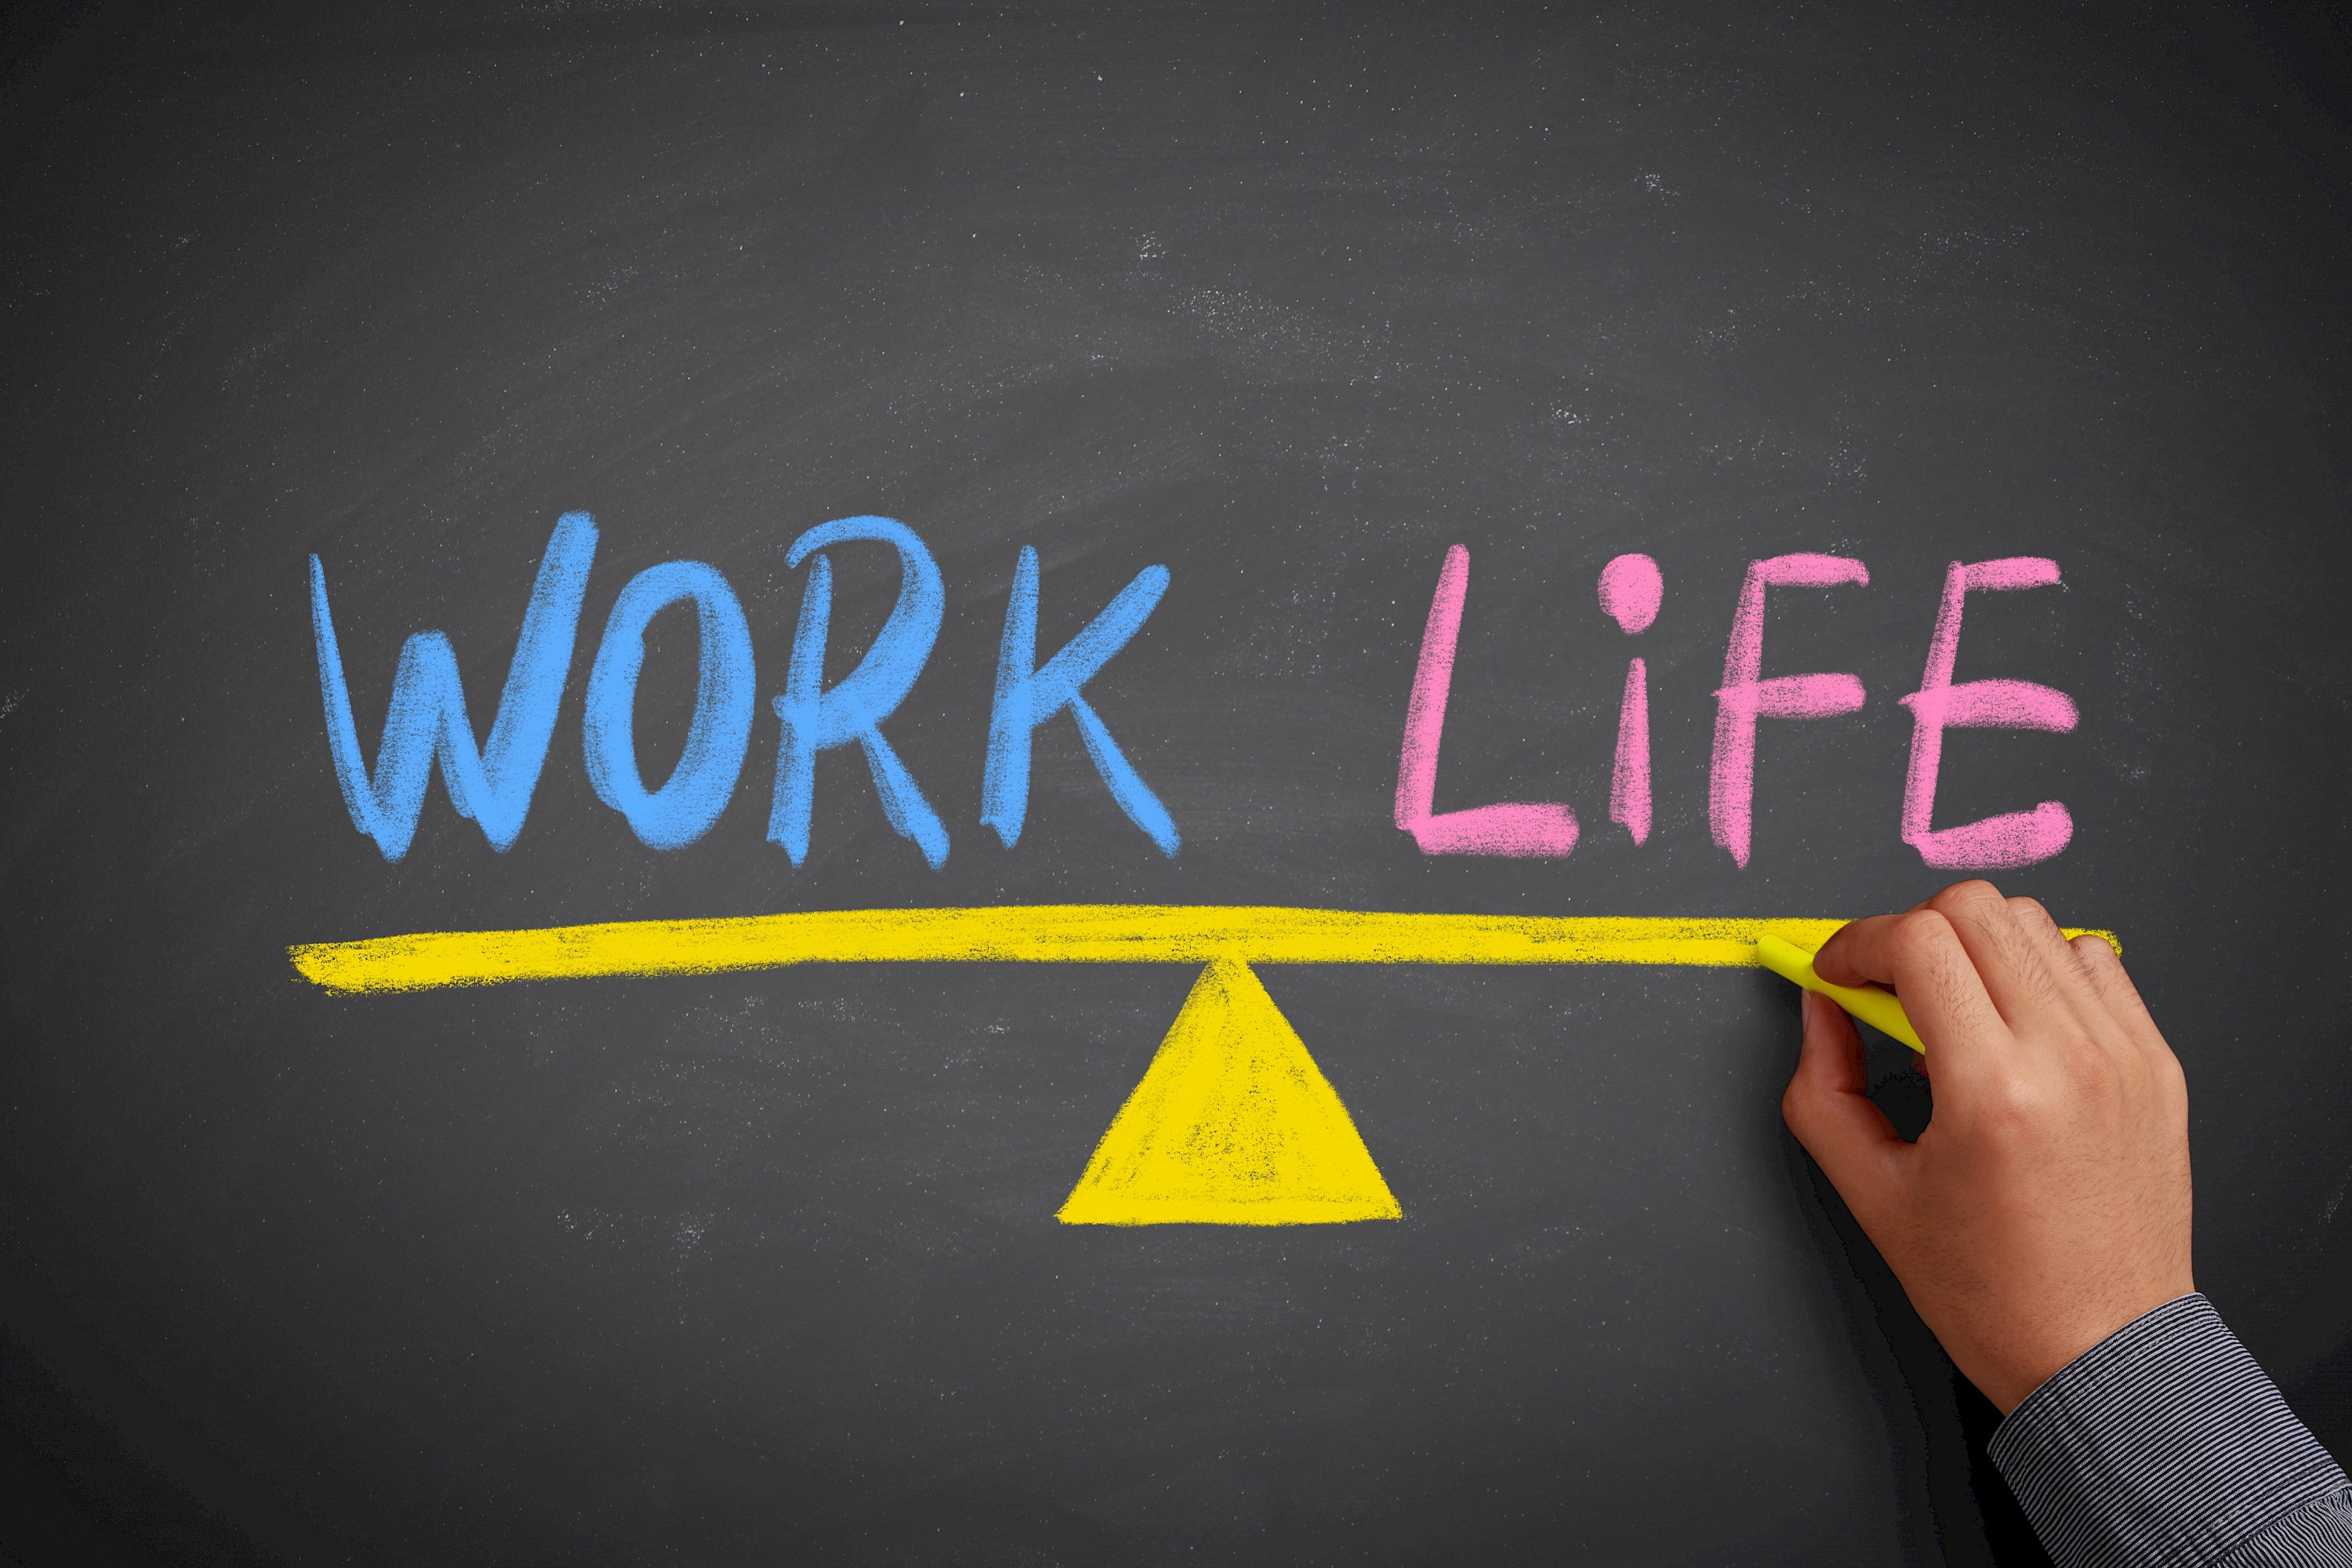 New life work. Work-Life Balance. Баланс между работой и личной жизнью. Баланс между жизнью и учебой. Баланс работа жизнь.